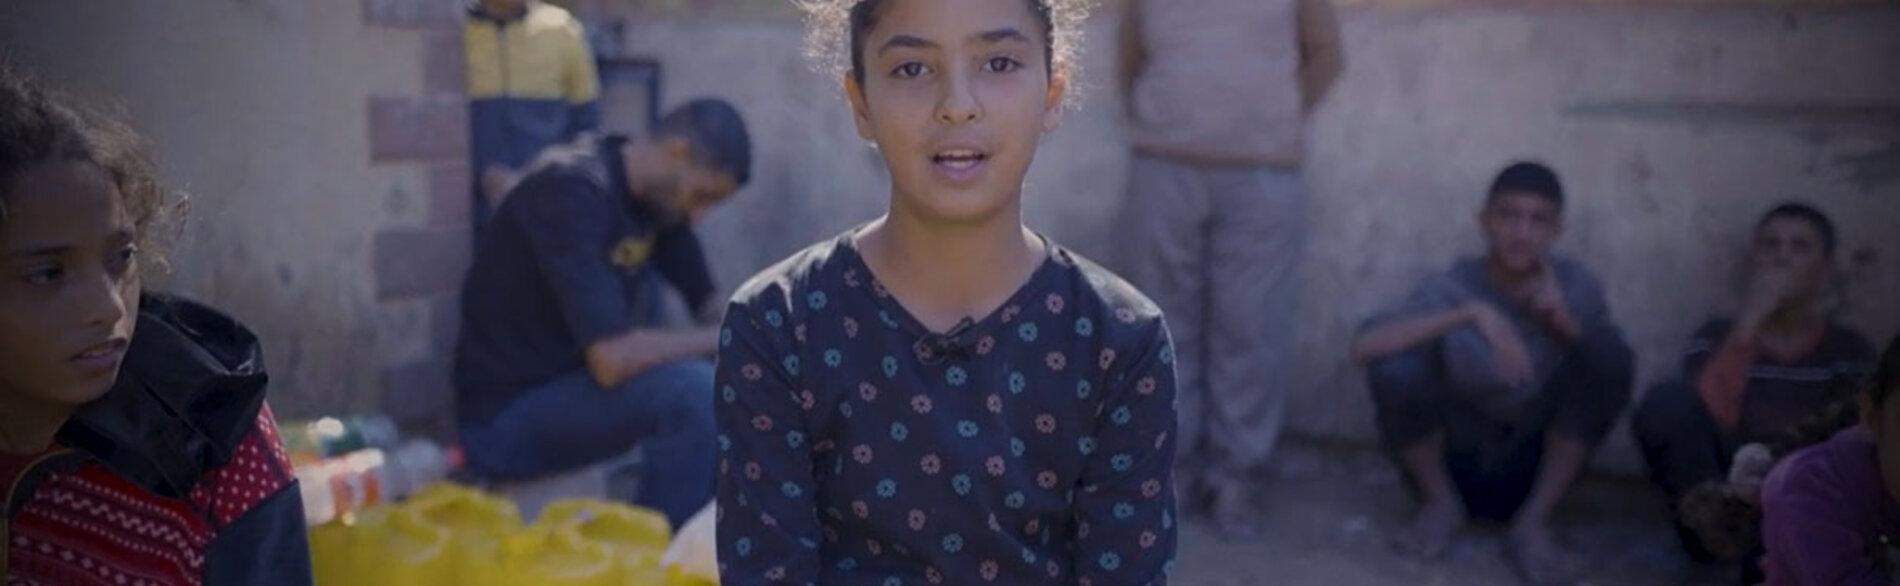 "לפני המלחמה חלמתי להיות רופאה כדי שאוכל לטפל באנשים." ביום הילד הבינלאומי, חזרה המתאמת ההומניטרית לין הייסטינגס על קריאתה "להגן על ילדים פלסטינים וישראלים ועל זכויותיהם." צילום מסך מתוך סרטון וידאו של יוניסף.